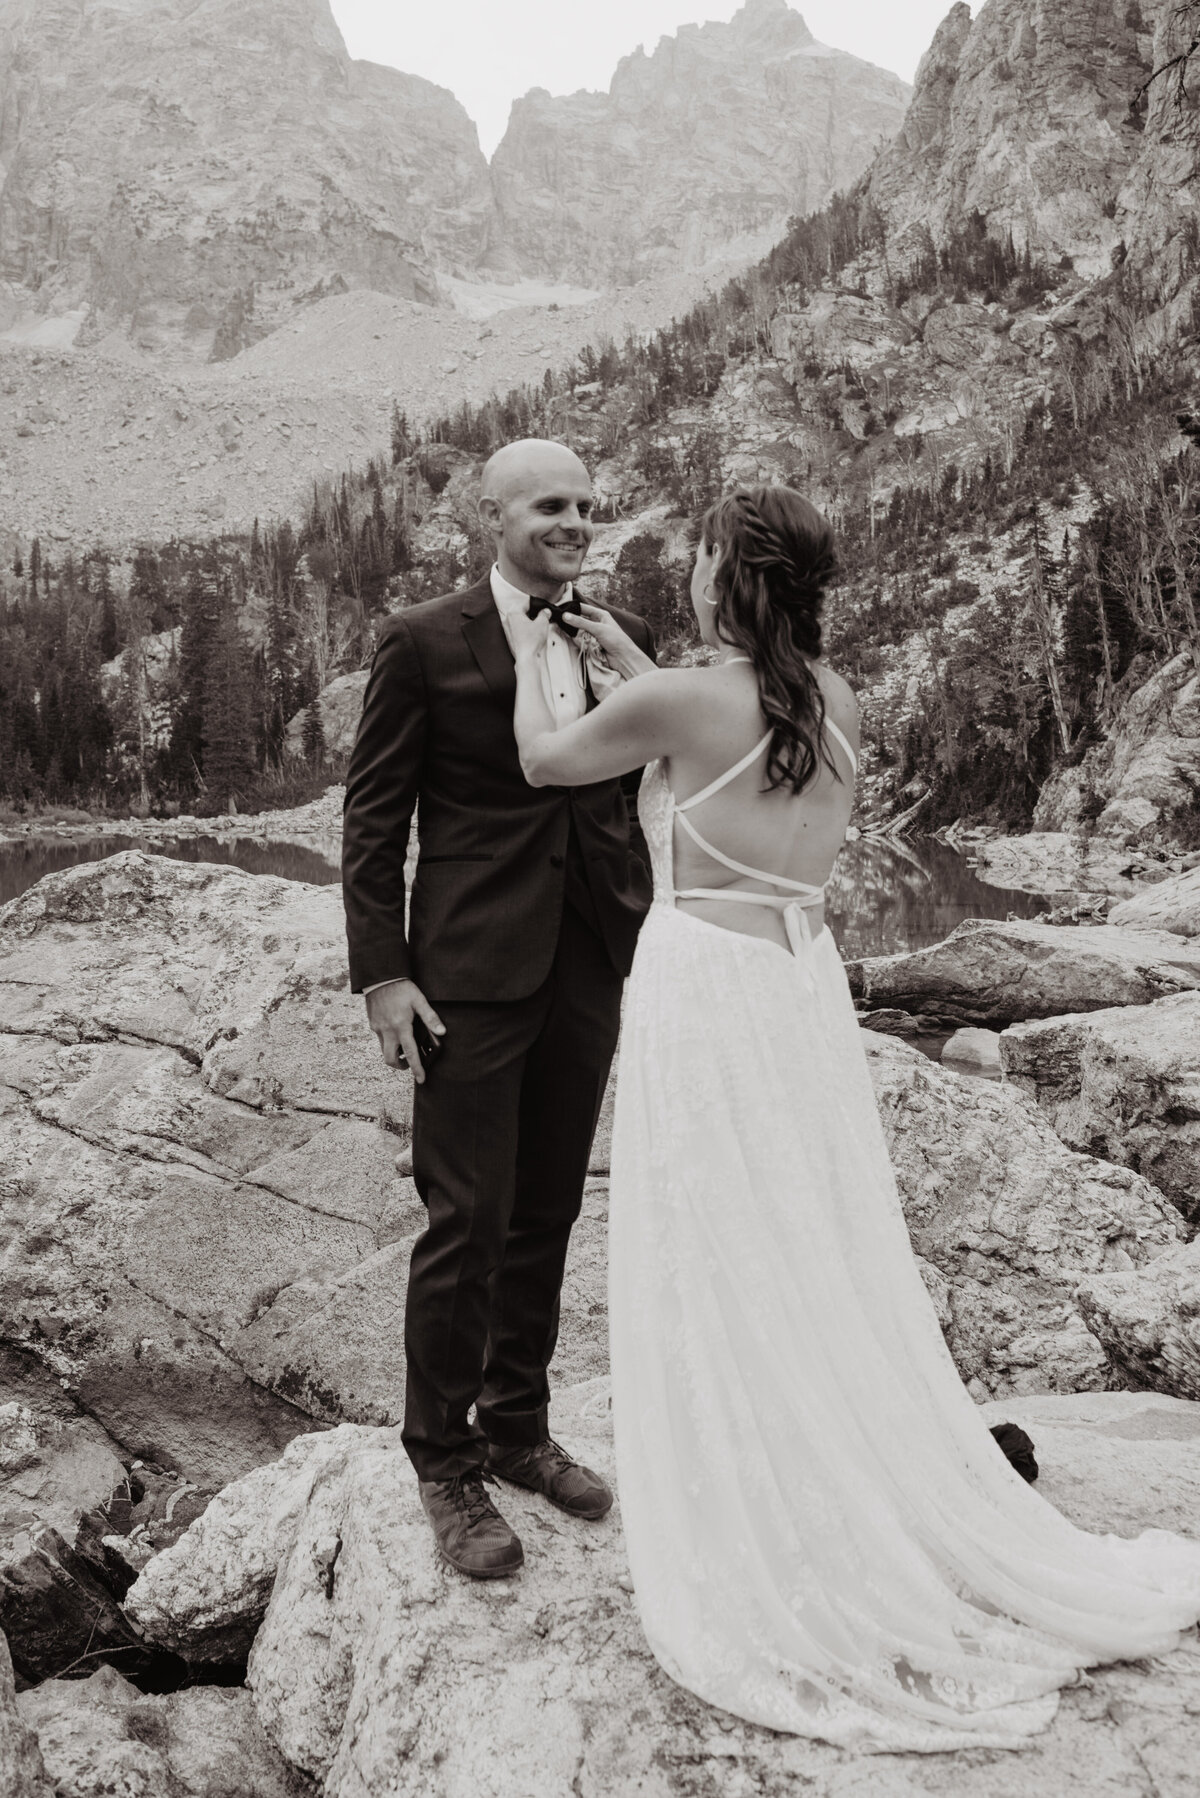 Jackson Hole photographers capture bride helping groom adjust bowtie